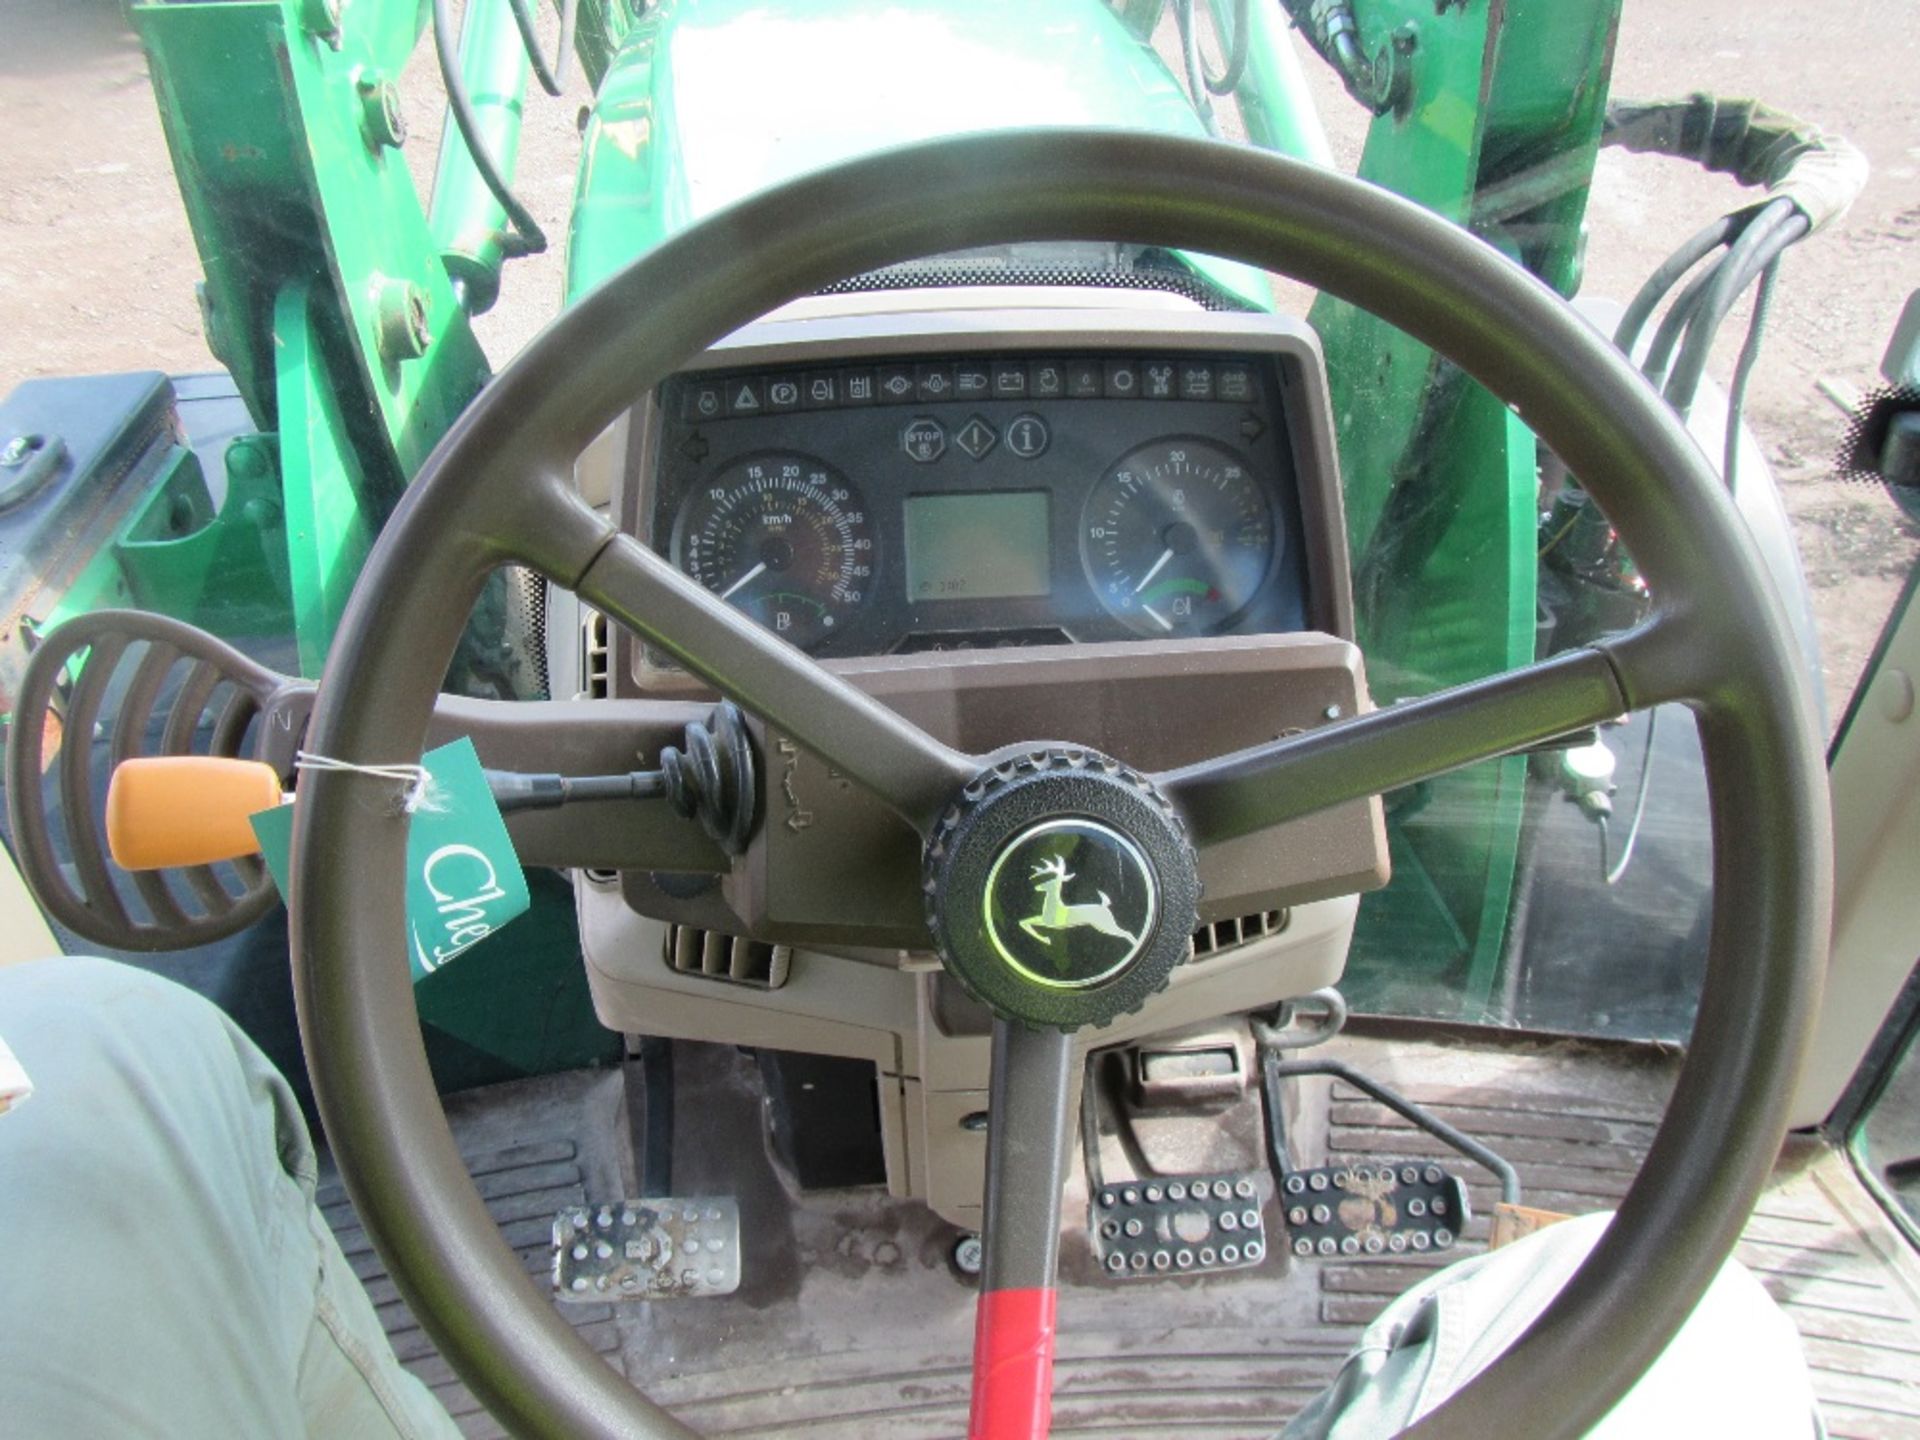 2005 John Deere 6820 TLS Tractor with JD Loader Reg No VX55 FYO - Image 16 of 18